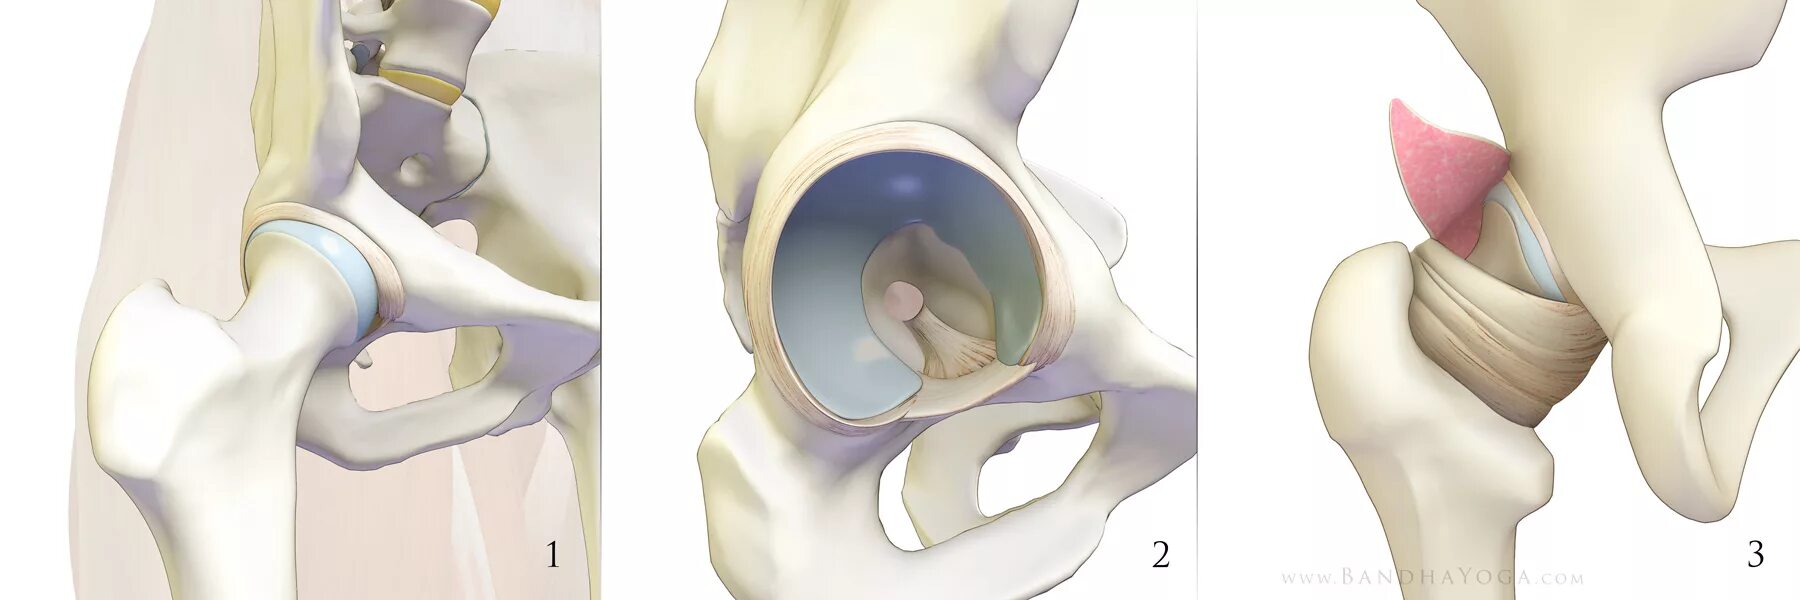 Лунная кость тазобедренного сустава. Суставная губа тазобедренного сустава анатомия. Лабрум тазобедренного сустава. Вертлужная губа тазобедренного сустава анатомия. Тазобедренные суставы производители